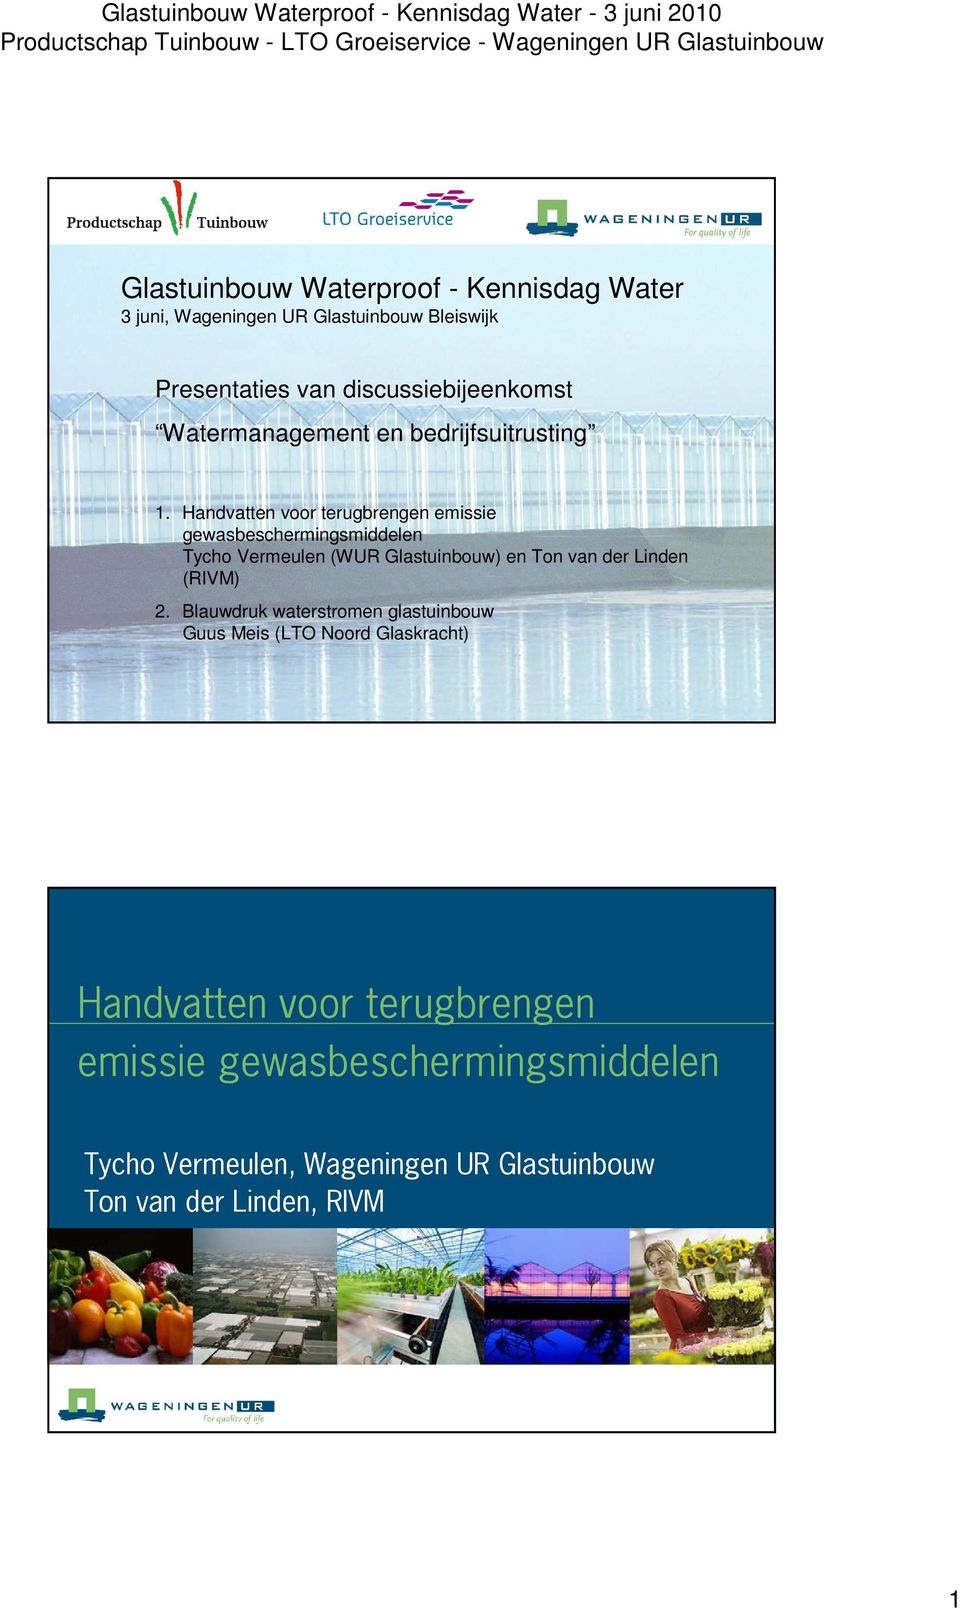 Handvatten voor terugbrengen emissie gewasbeschermingsmiddelen Tycho Vermeulen (WUR Glastuinbouw) en Ton van der Linden